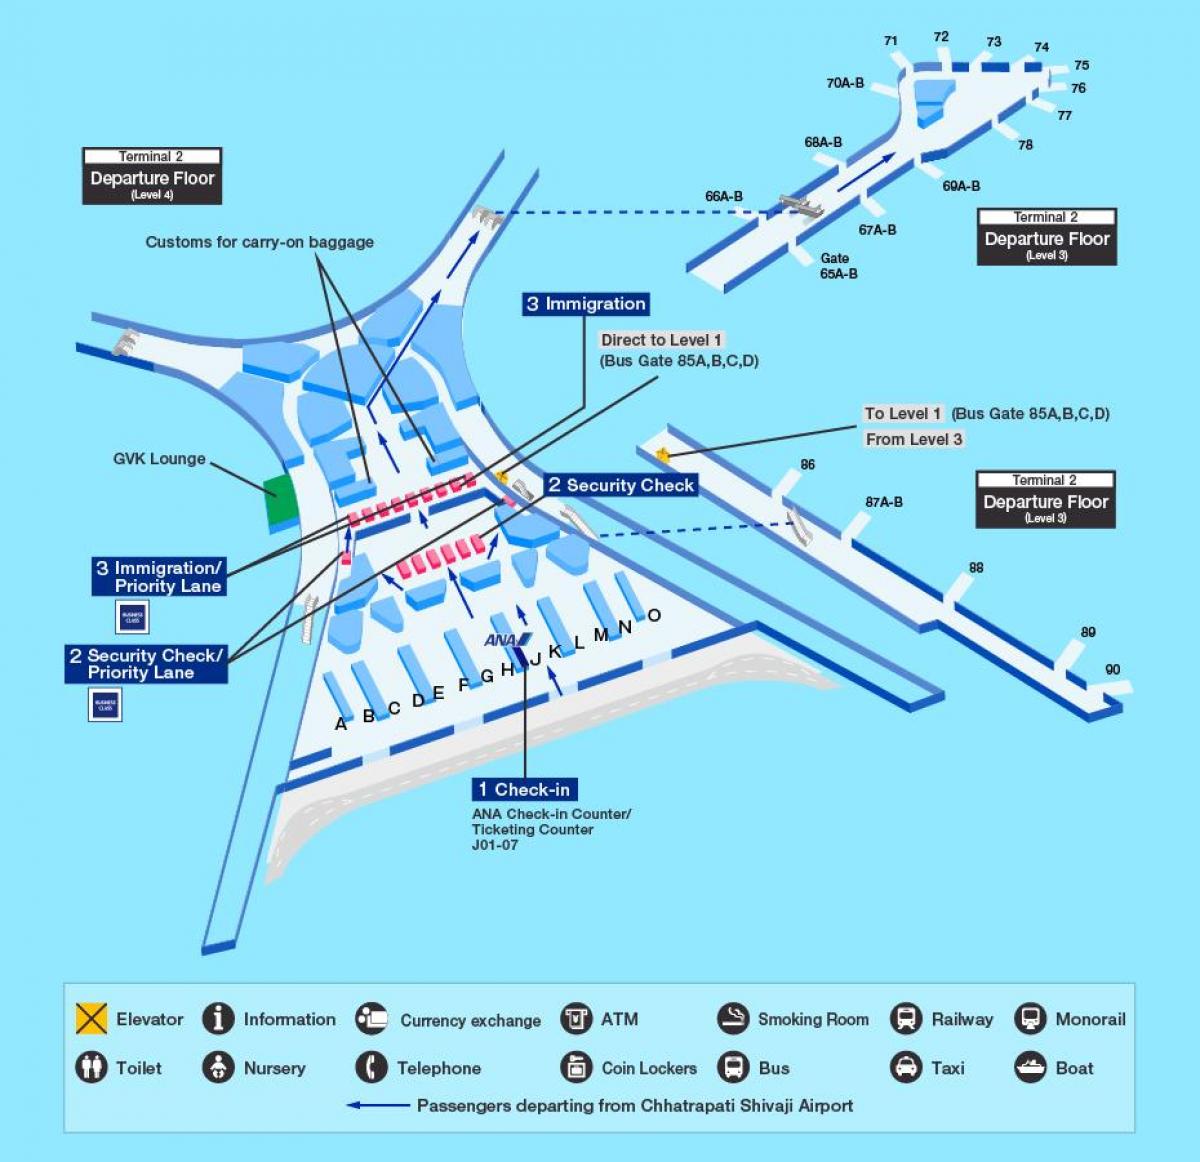 Mumbai international airport terminal 2 del mapa